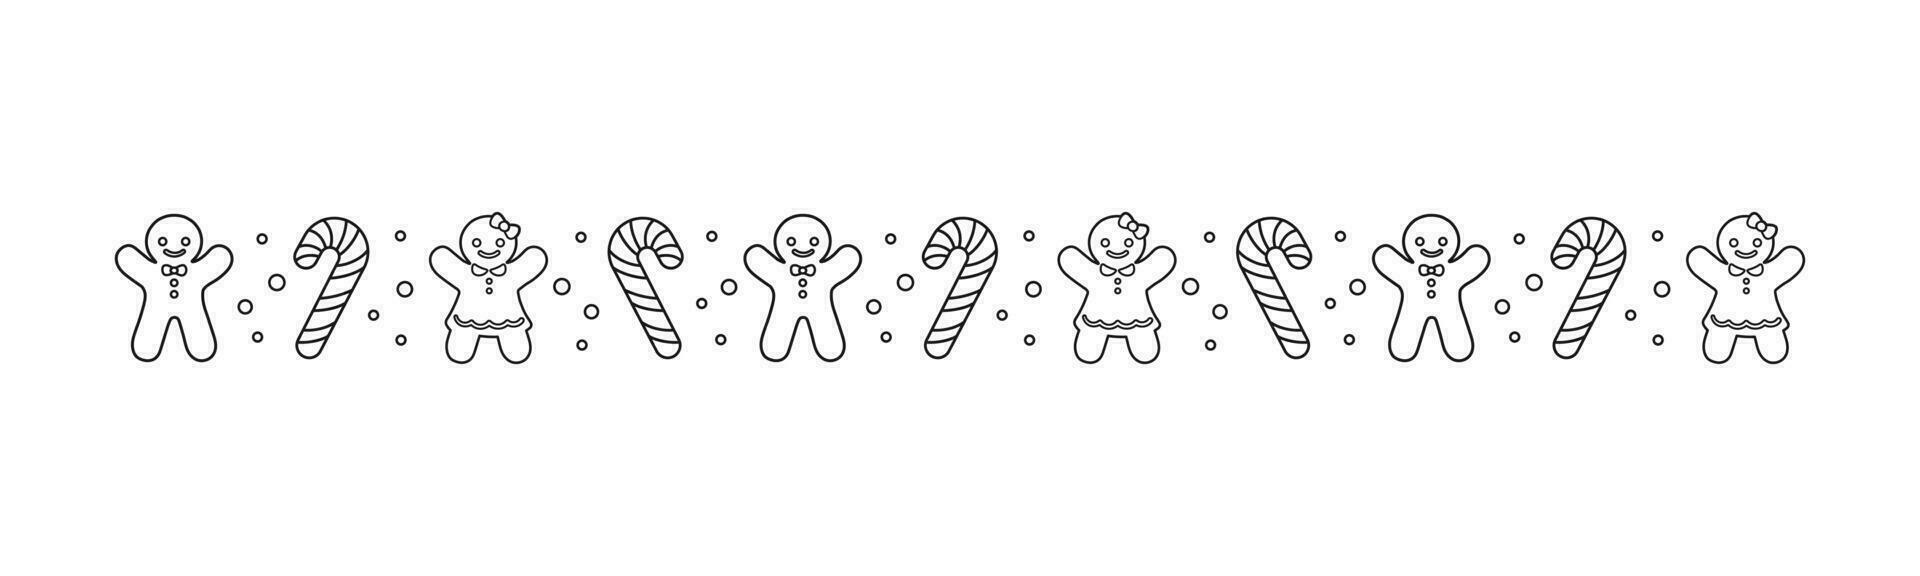 jul tema dekorativ gräns och text delare, pepparkaka småkakor och godis sockerrör mönster översikt klotter. vektor illustration.